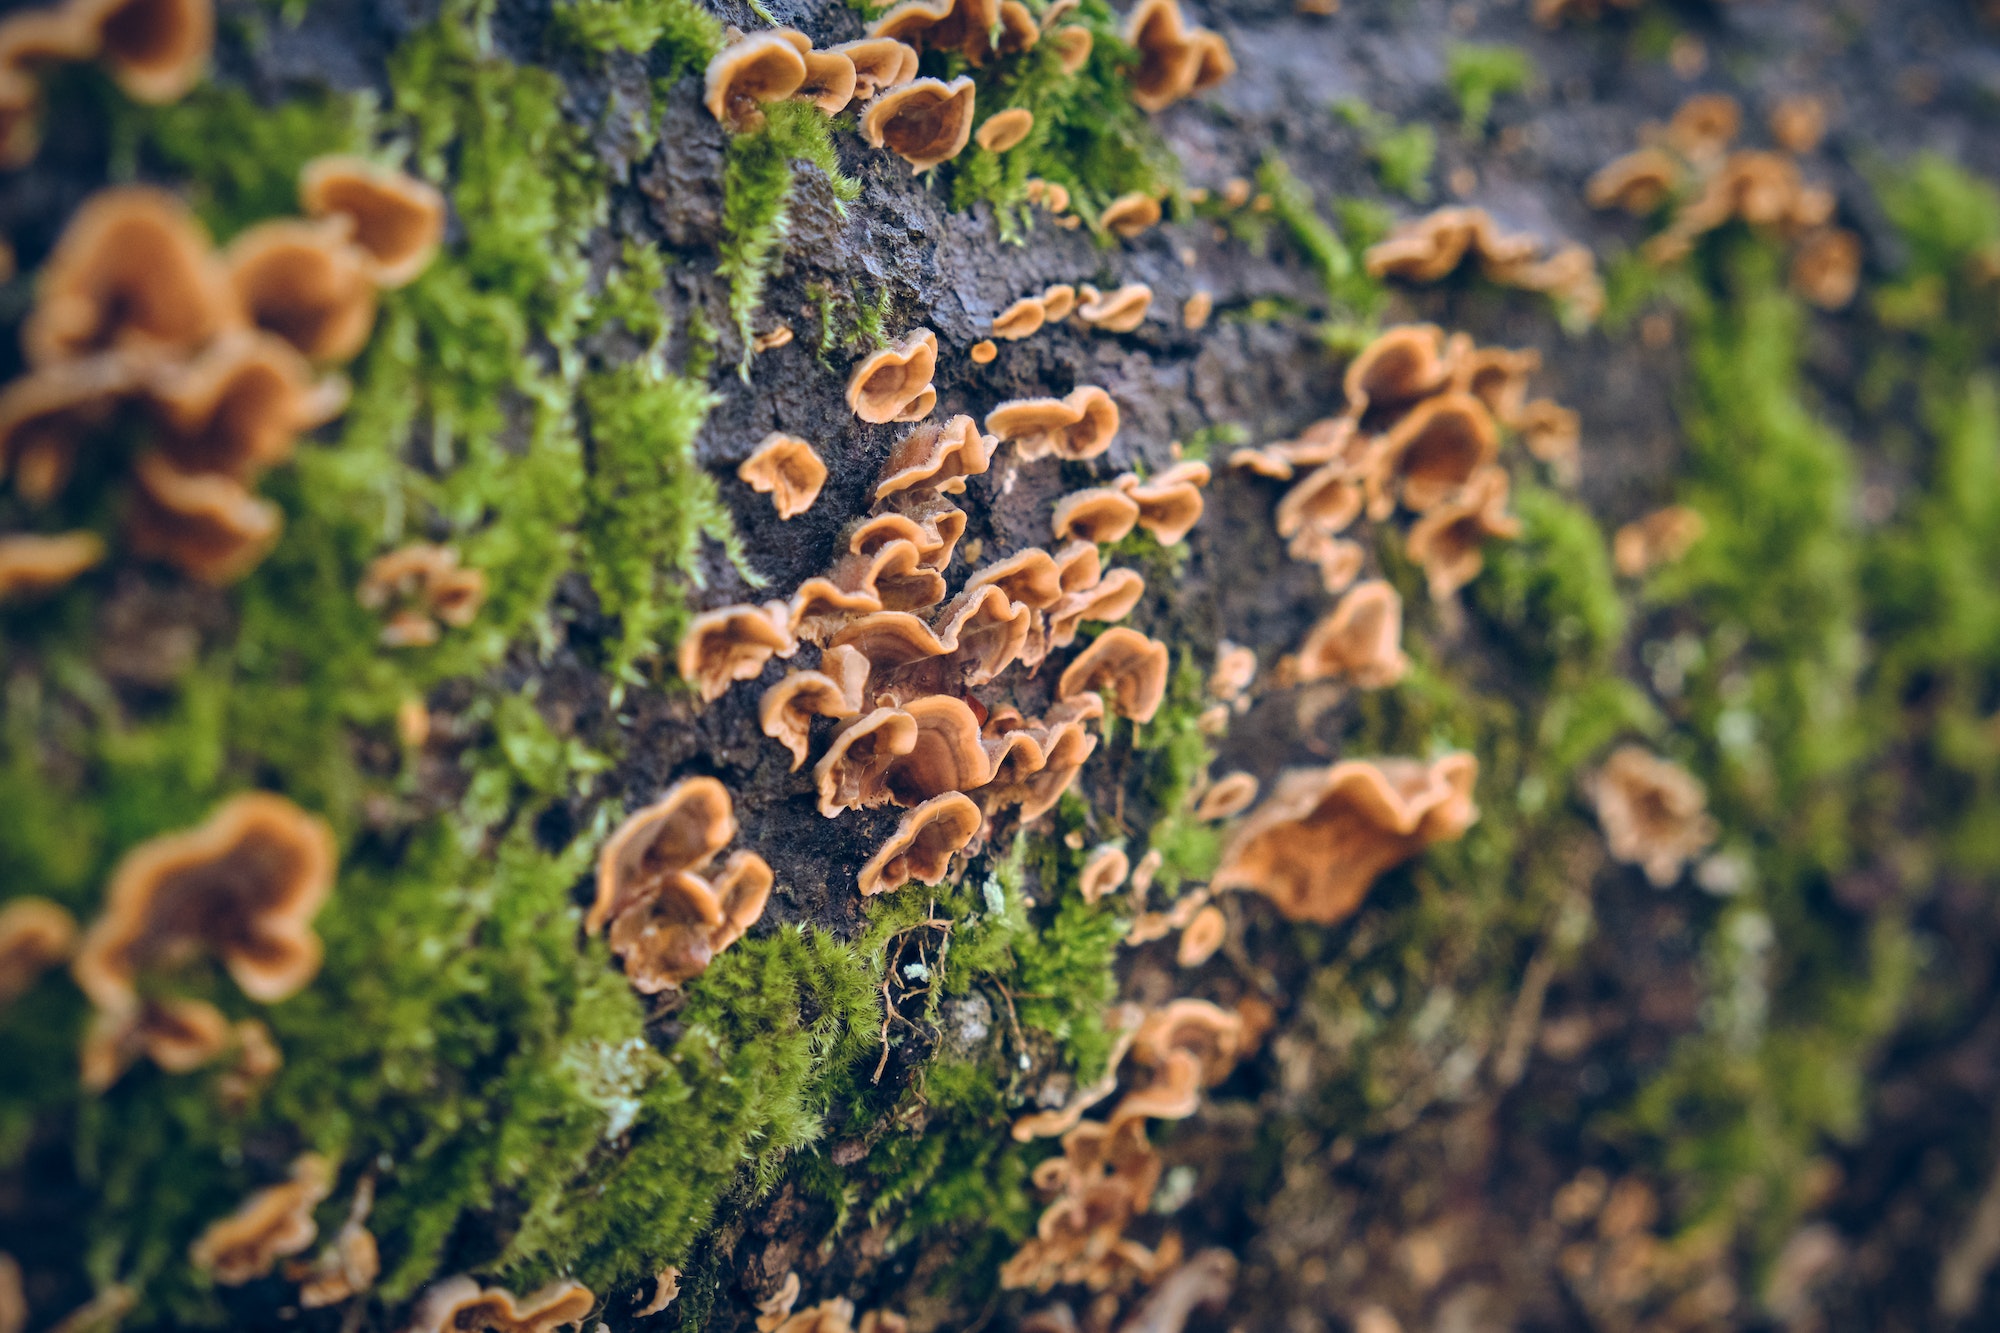 Fungi growing on tree trunk